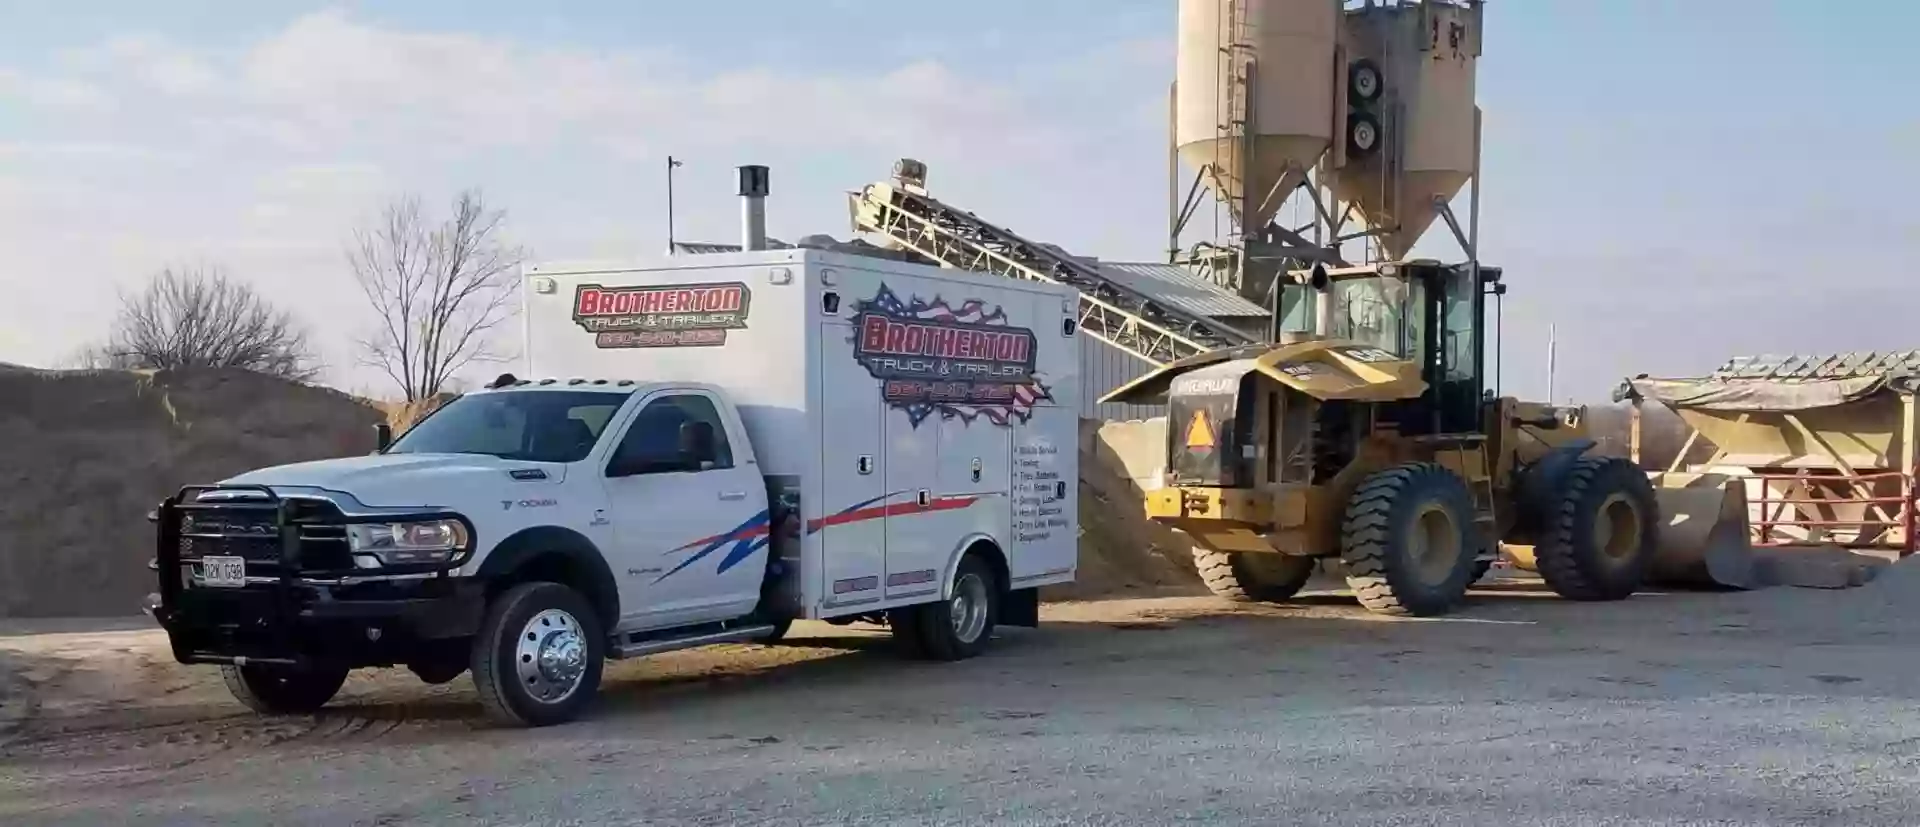 Brotherton Truck & Trailer Repair